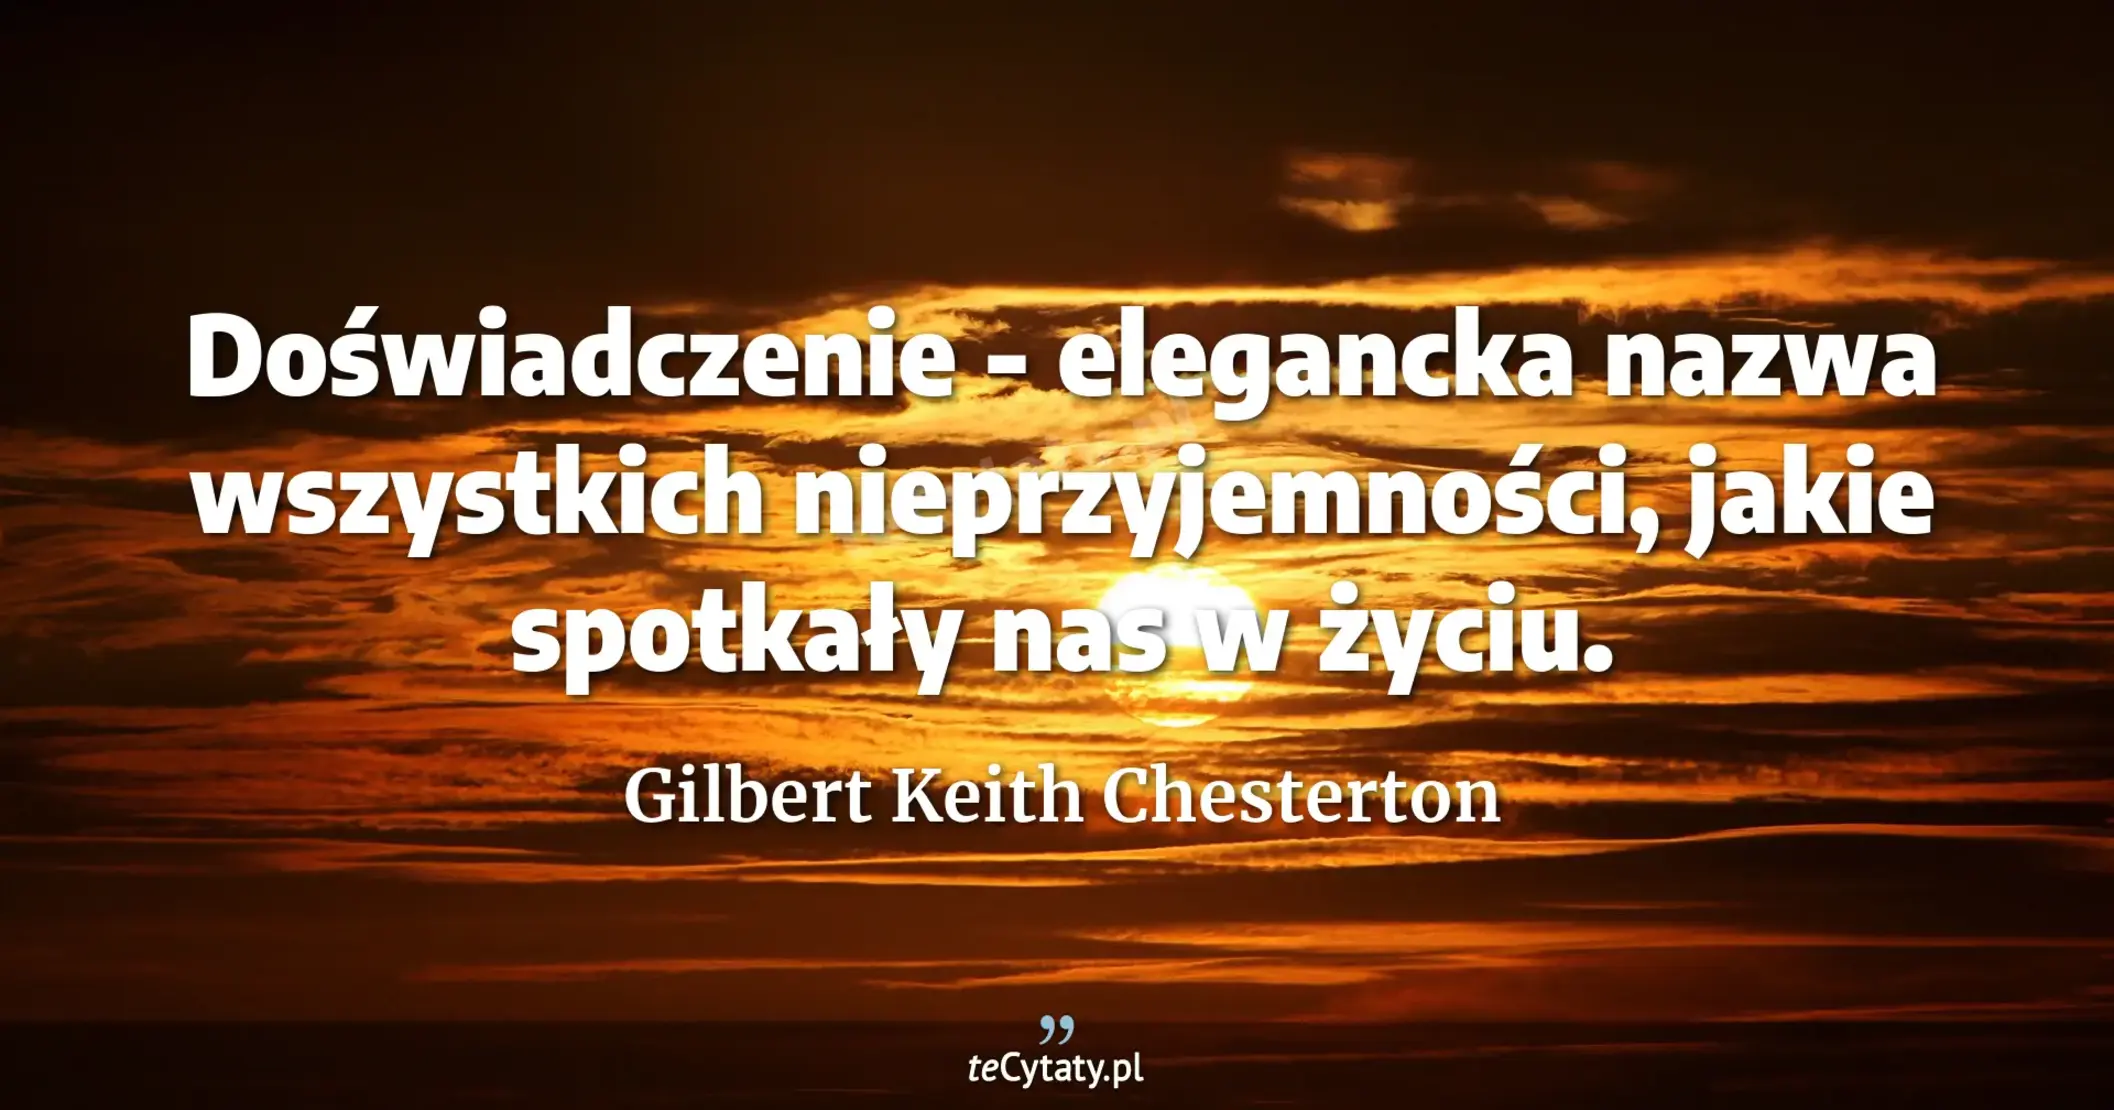 Doświadczenie - elegancka nazwa wszystkich nieprzyjemności, jakie spotkały nas w życiu. - Gilbert Keith Chesterton